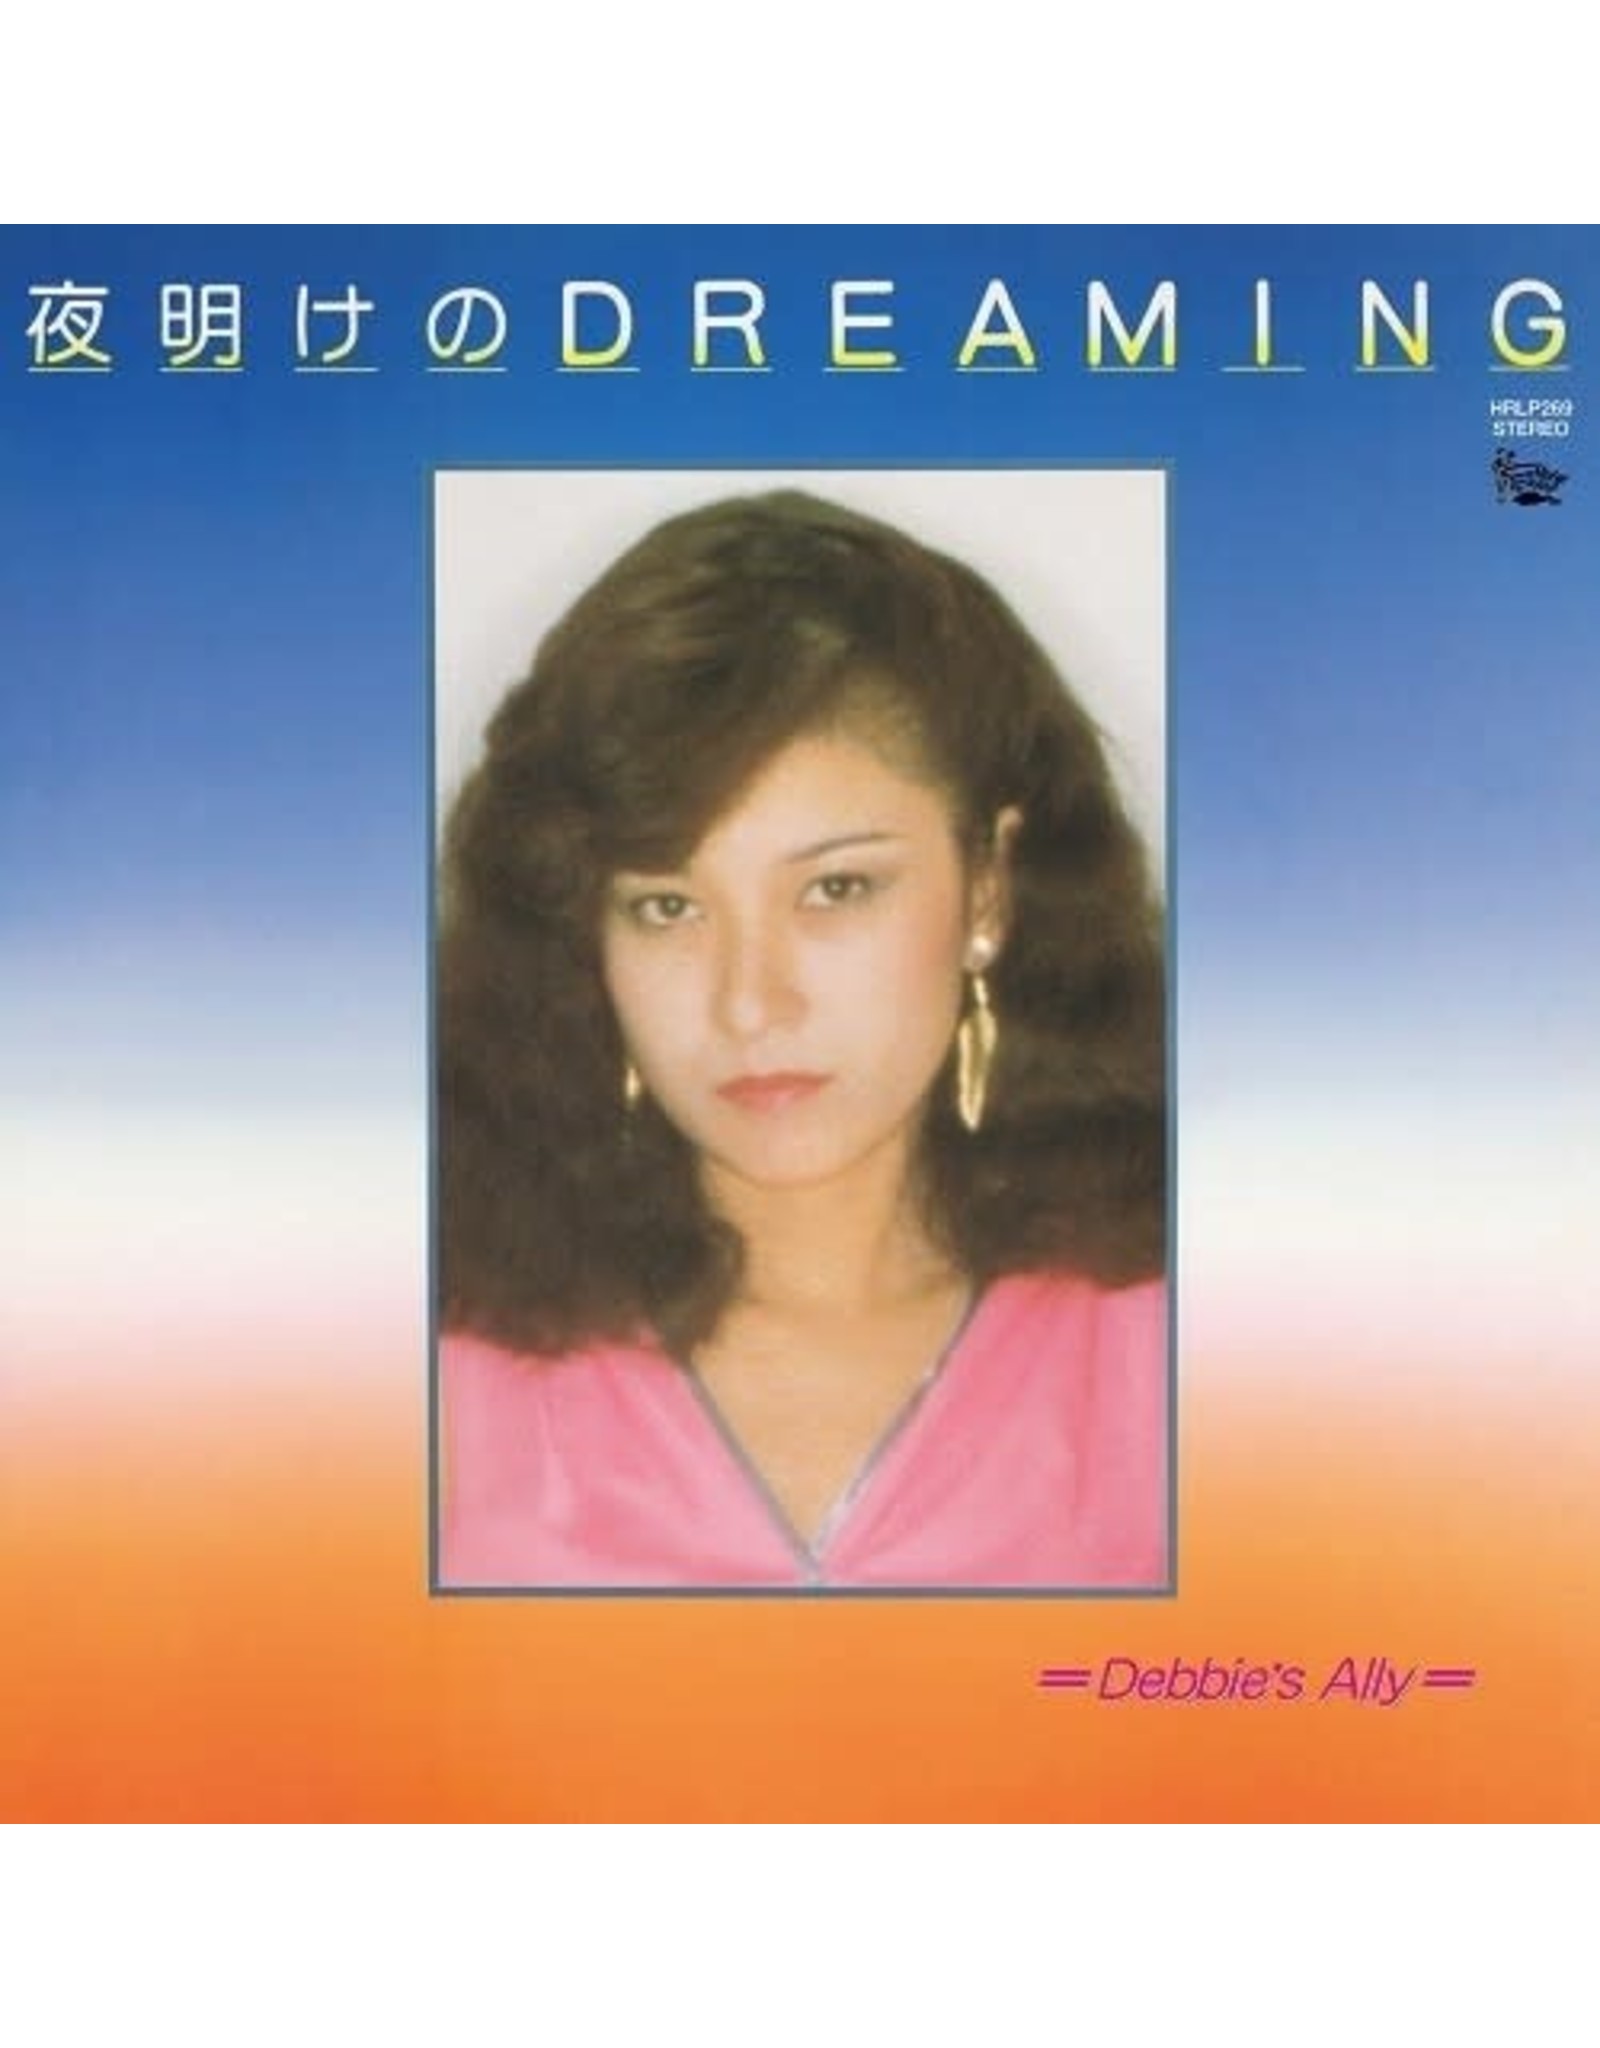 SALE開催中 Debbie's Ally 夜明けのDREAMING - Vinyl fawe.org